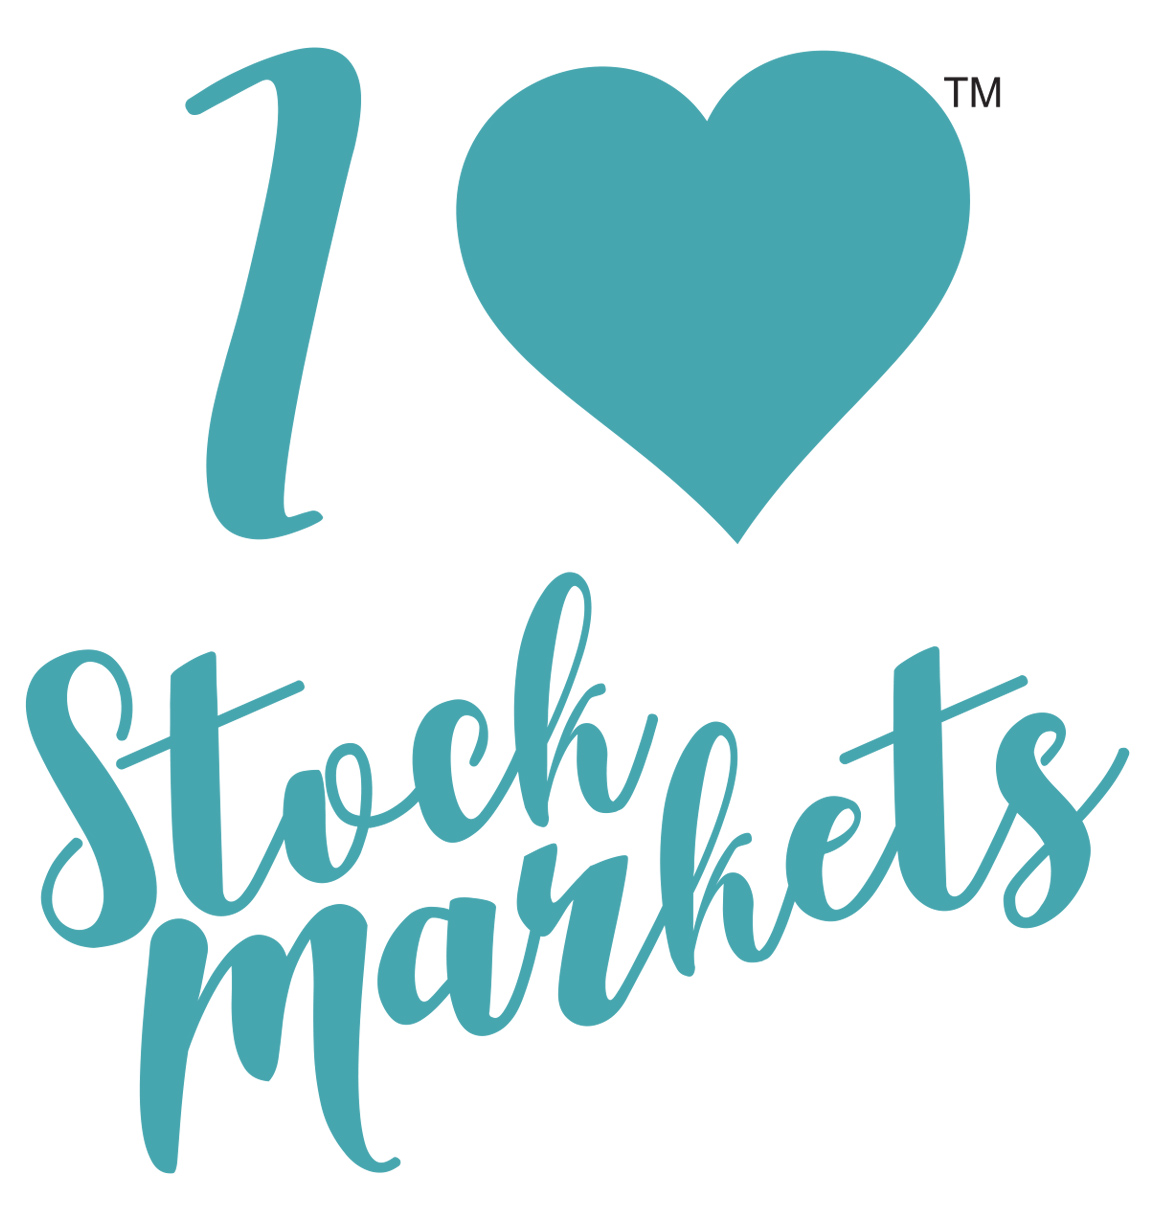 I Love Stock Market - BBF